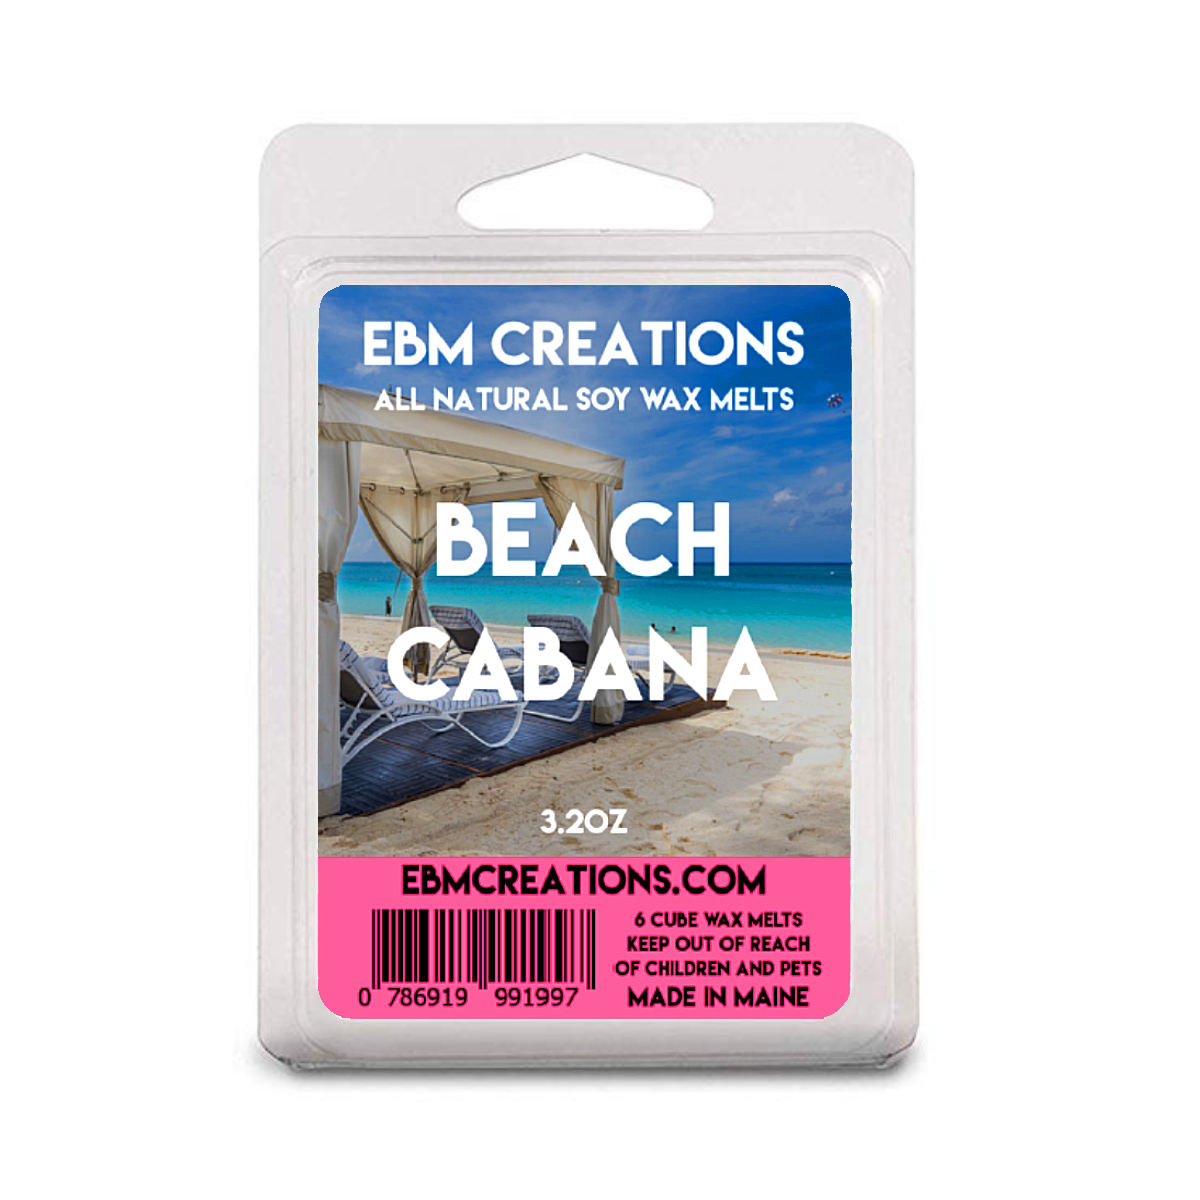 Beach Cabana - 3.2 oz Clamshell